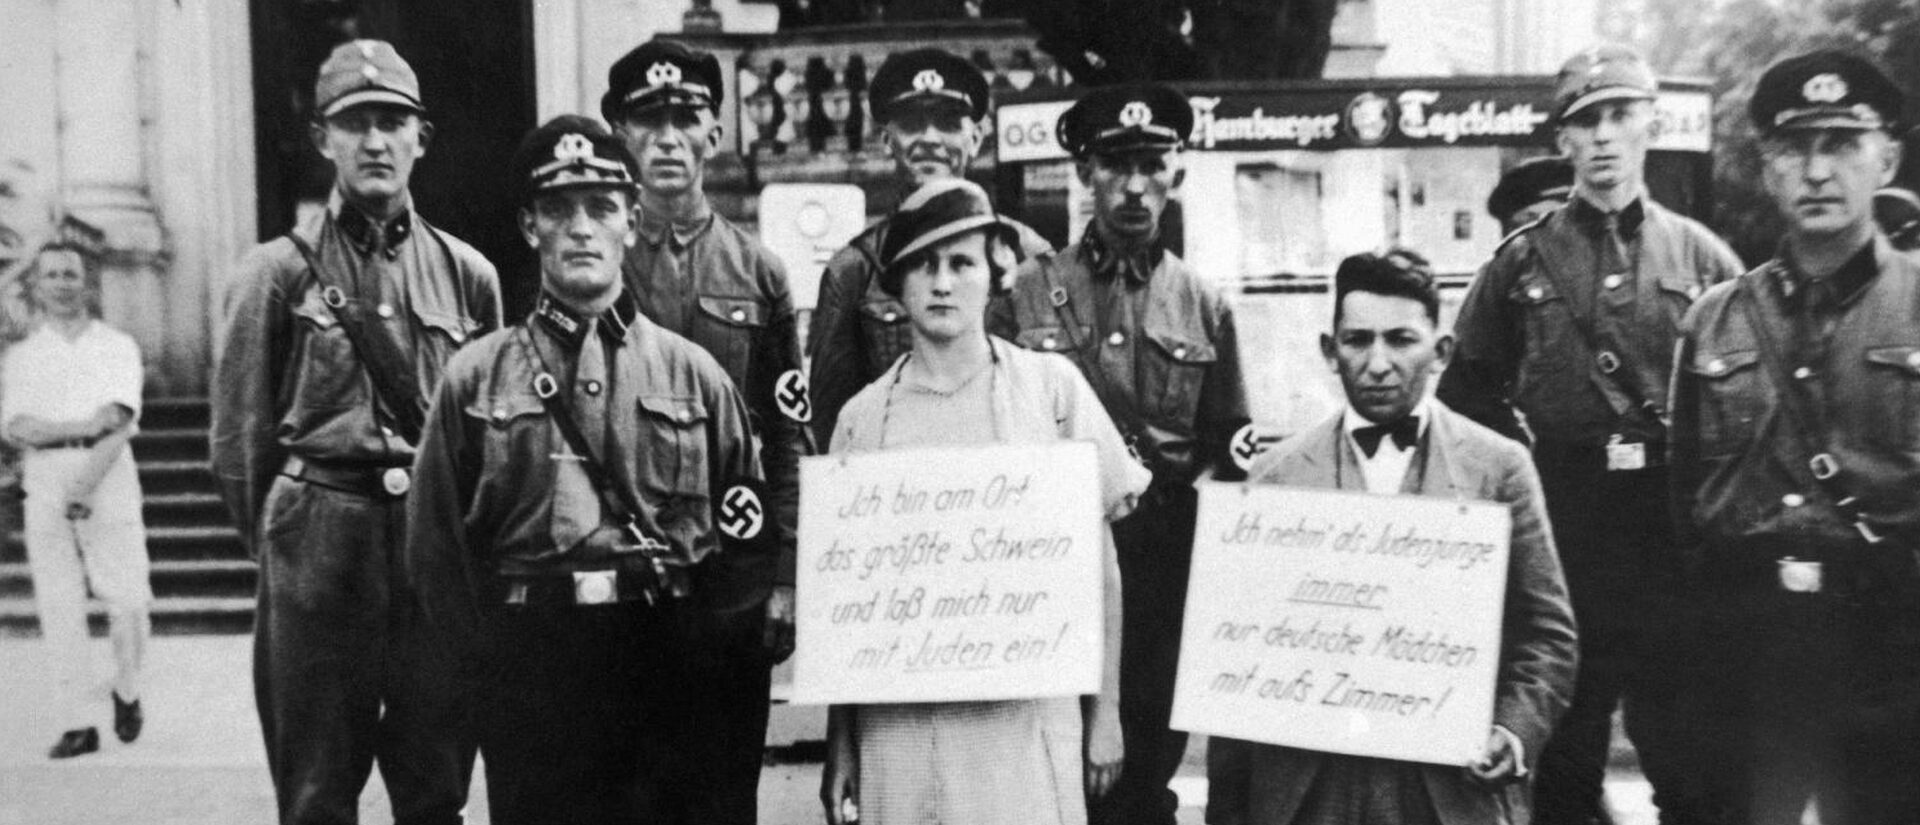 Persécution des juifs en Allemagne nazie. Sur les pancartes on peut lire: "Je suis la plus grosse truie. Je ne m'acoquine qu'avec des juifs." "Jeune homme juif, je ne prends que des jeunes filles allemandes dans ma chambre." | © domaine public 